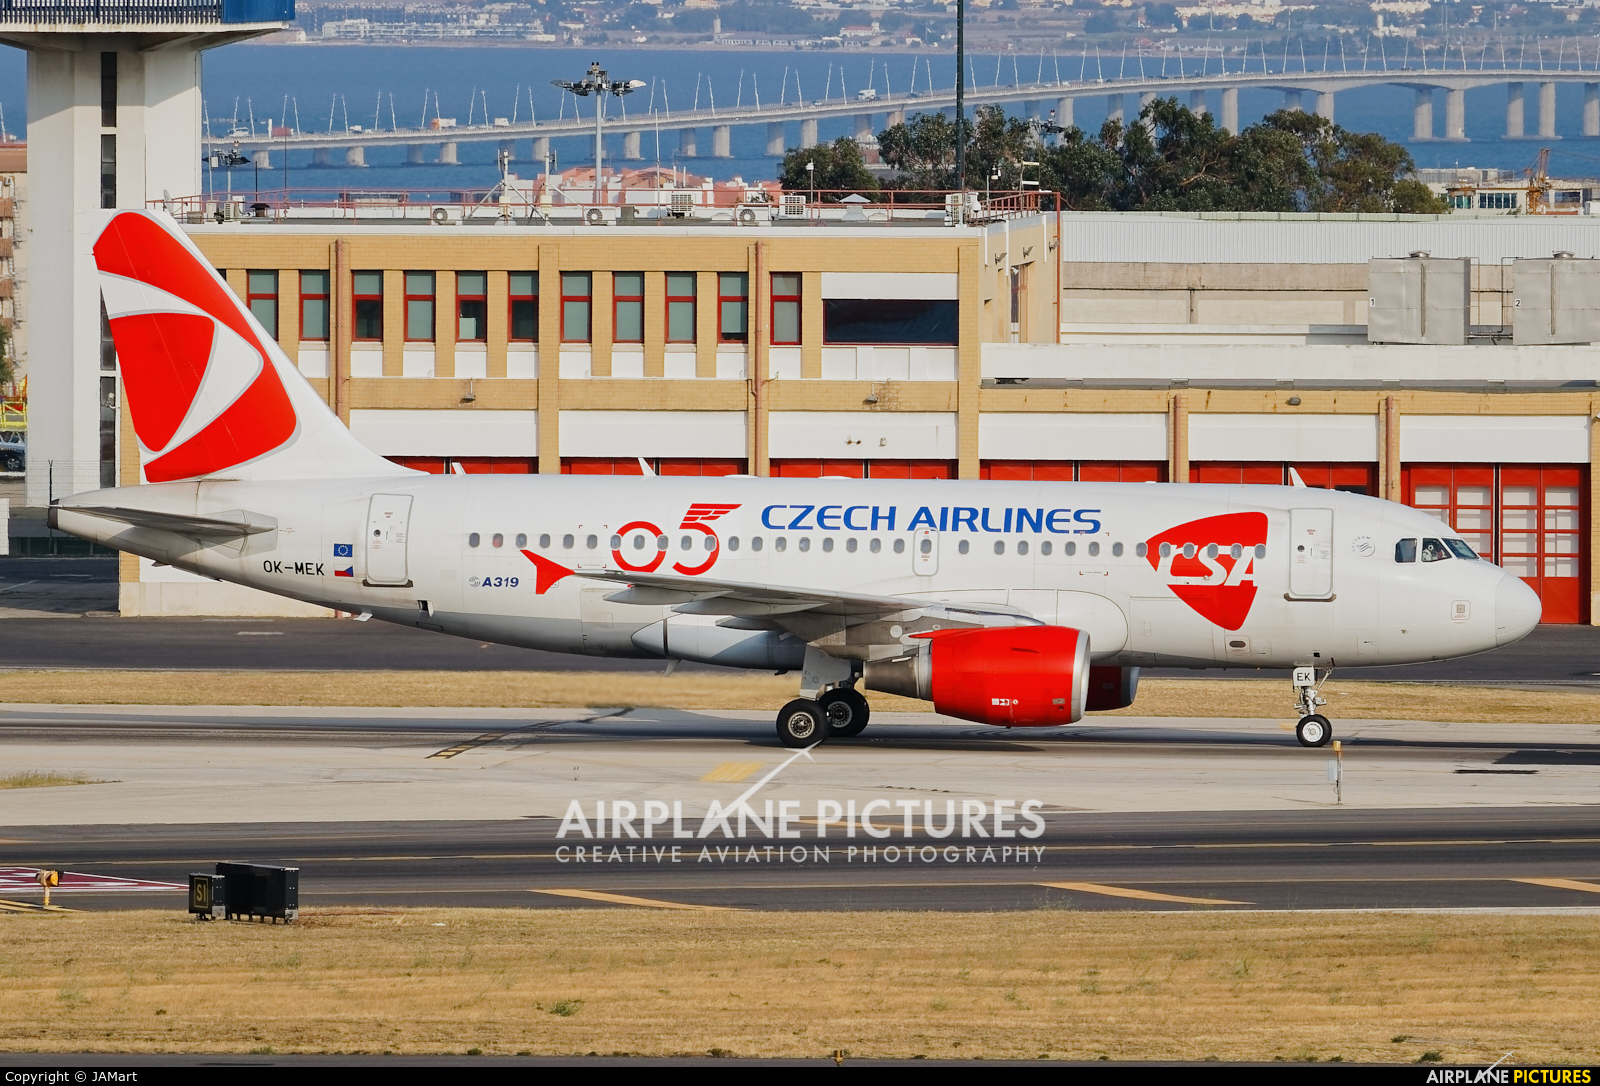 CSA - Czech Airlines OK-MEK aircraft at Lisbon